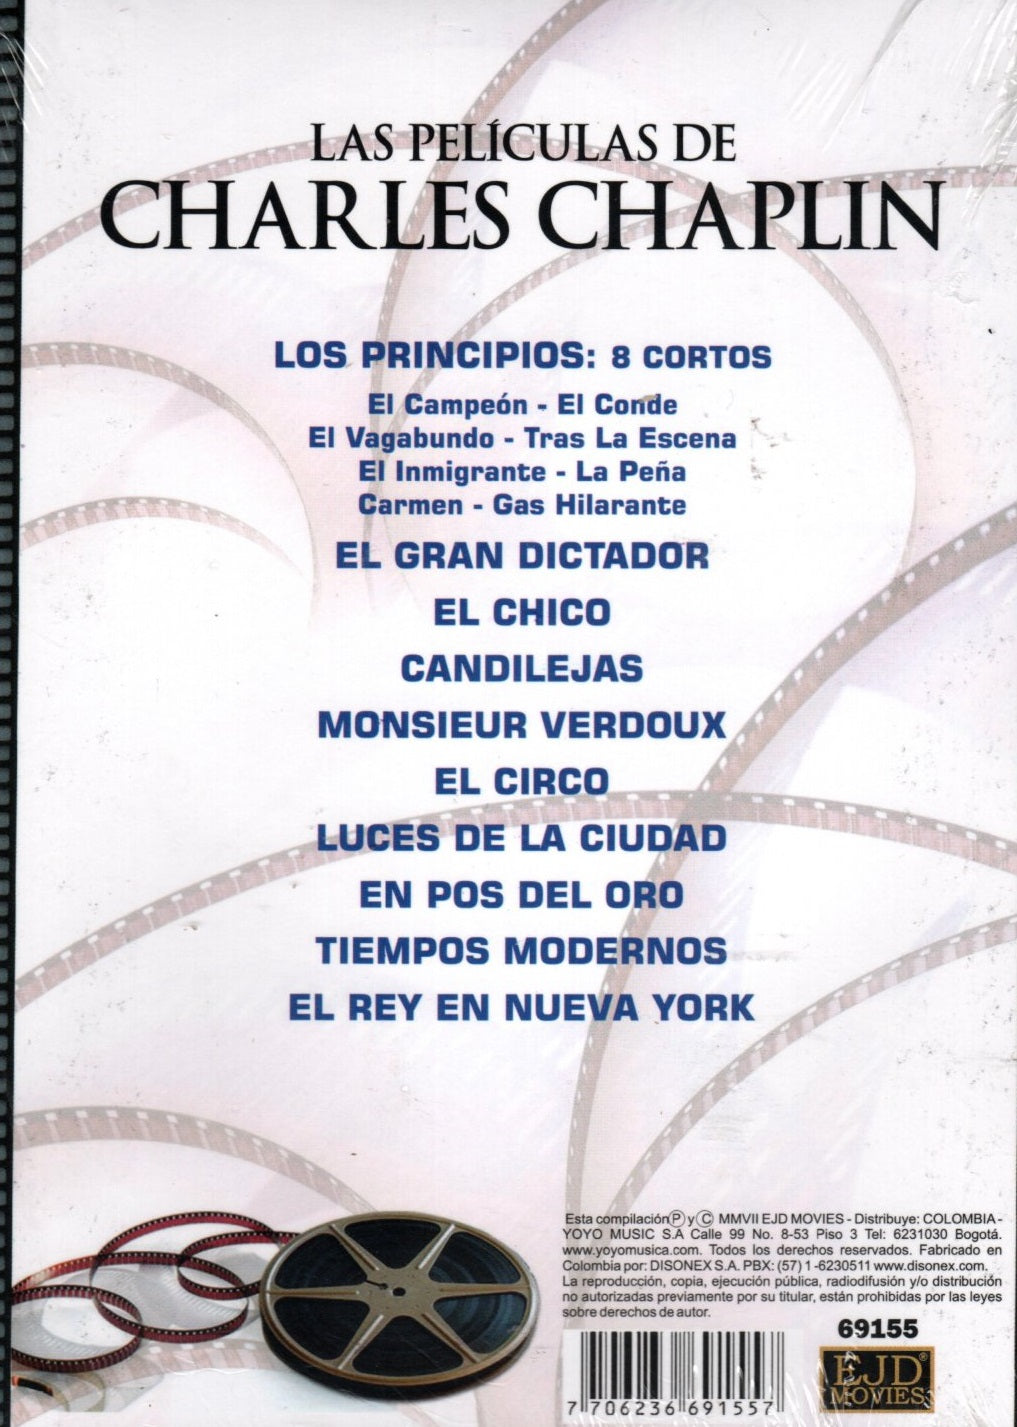 DVDX6 Las Películas De Charles Chaplin